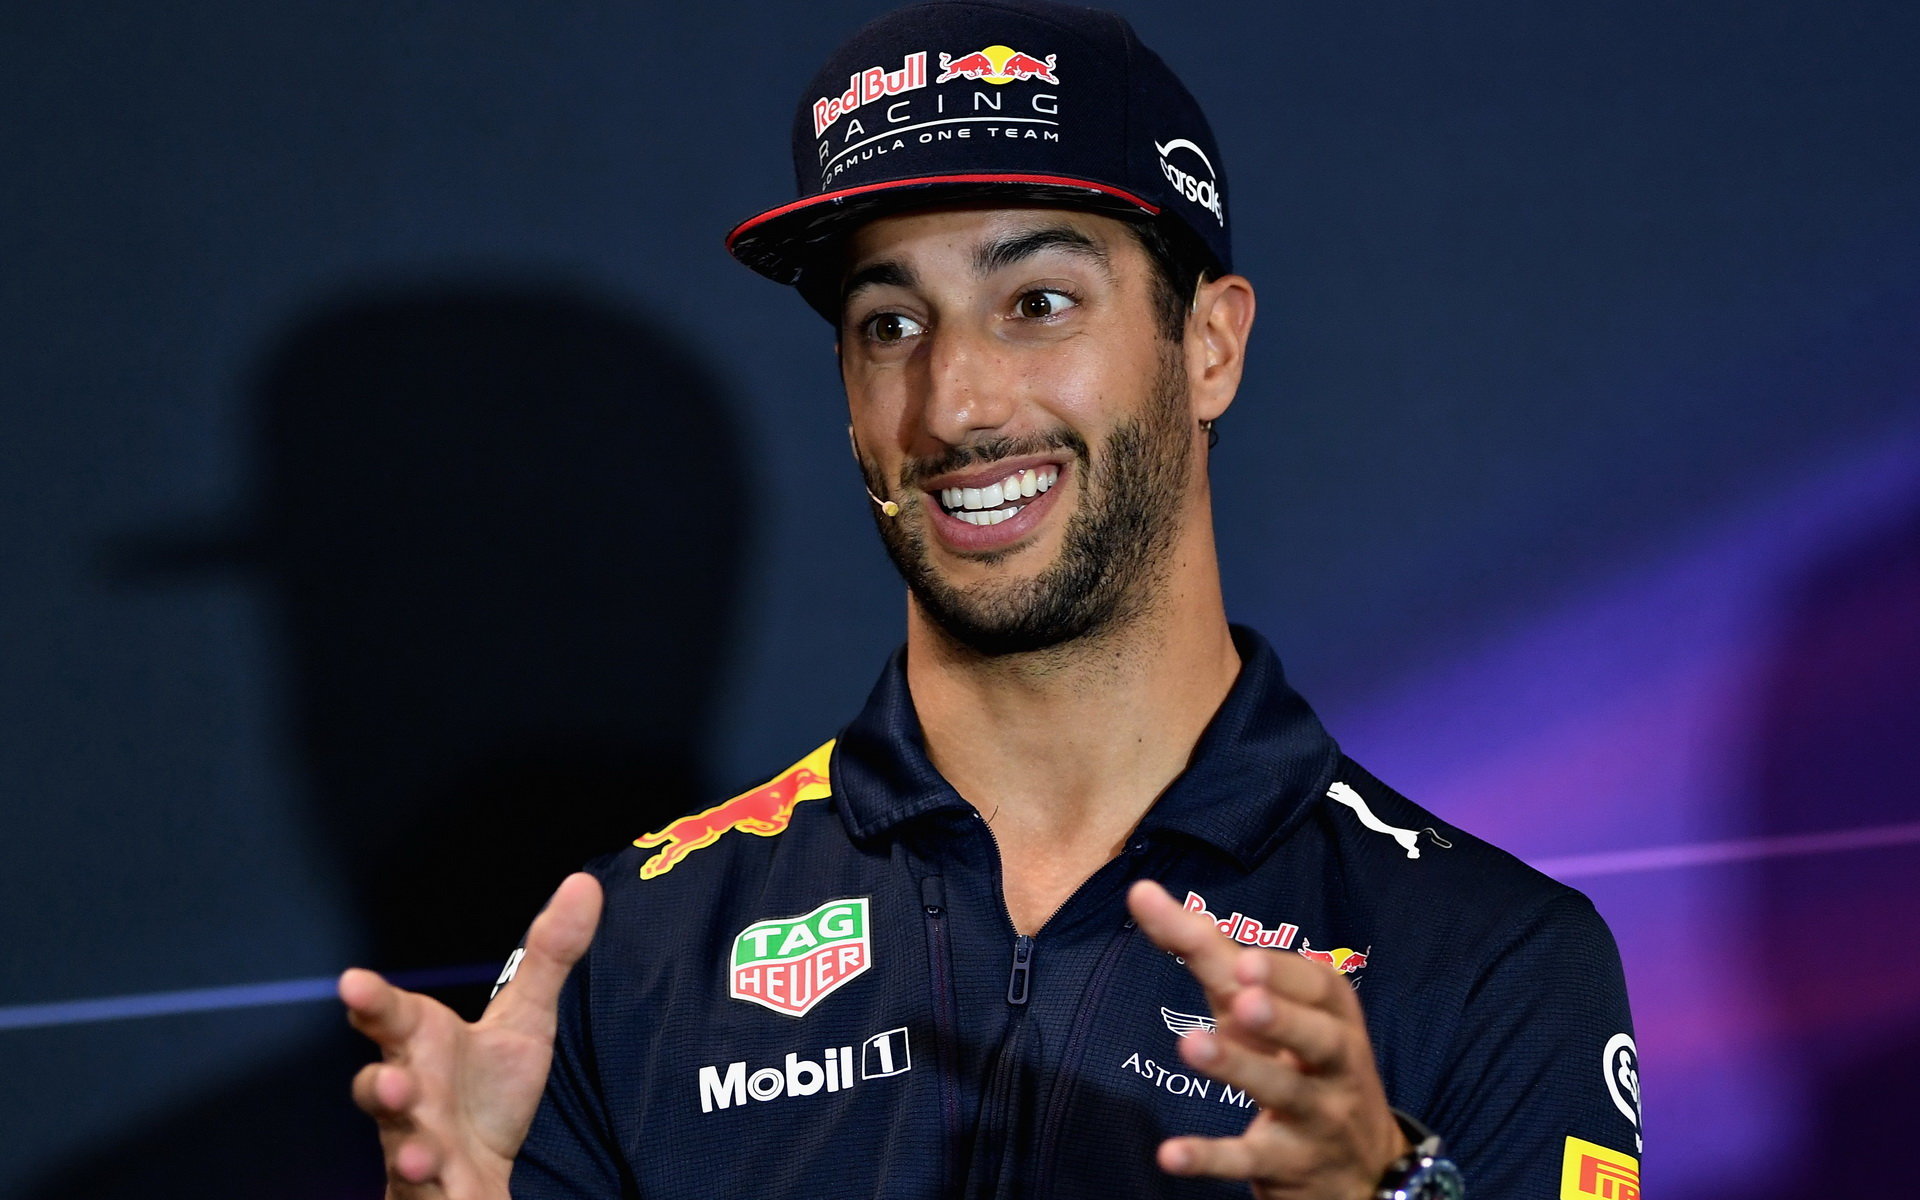 Daniel Ricciardo na tiskovce v Monaku